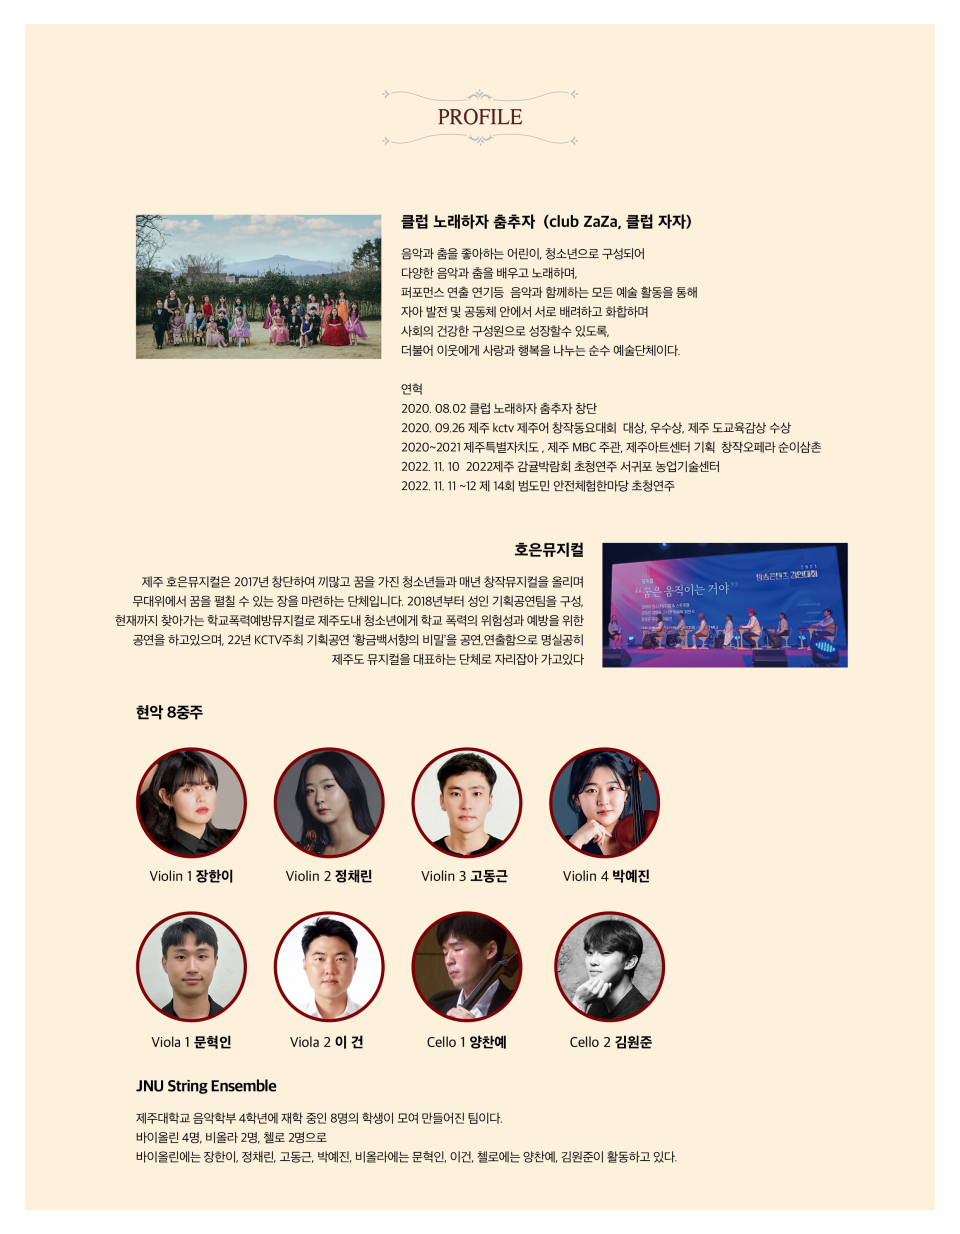 (사)한국음악협회 제주특별자치도지회, 2022 제주음악제 송년음악회 ALL AGES 개최